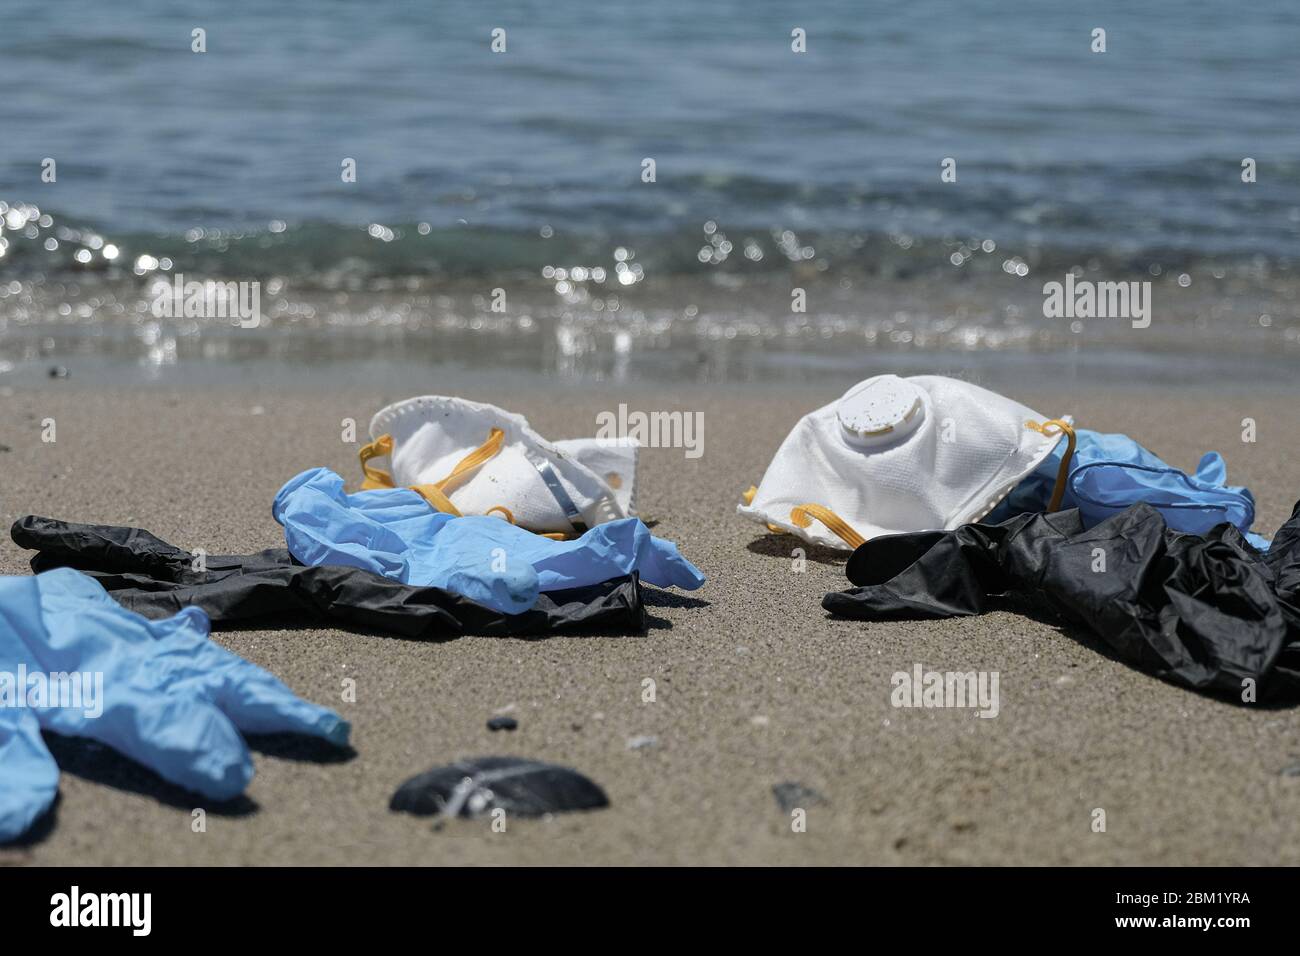 Maschera antivirus protettiva e guanti di plastica spazzatura rifiuti sulla spiaggia sabbiosa, malattia da inquinamento da cocvidi coronavirus Foto Stock